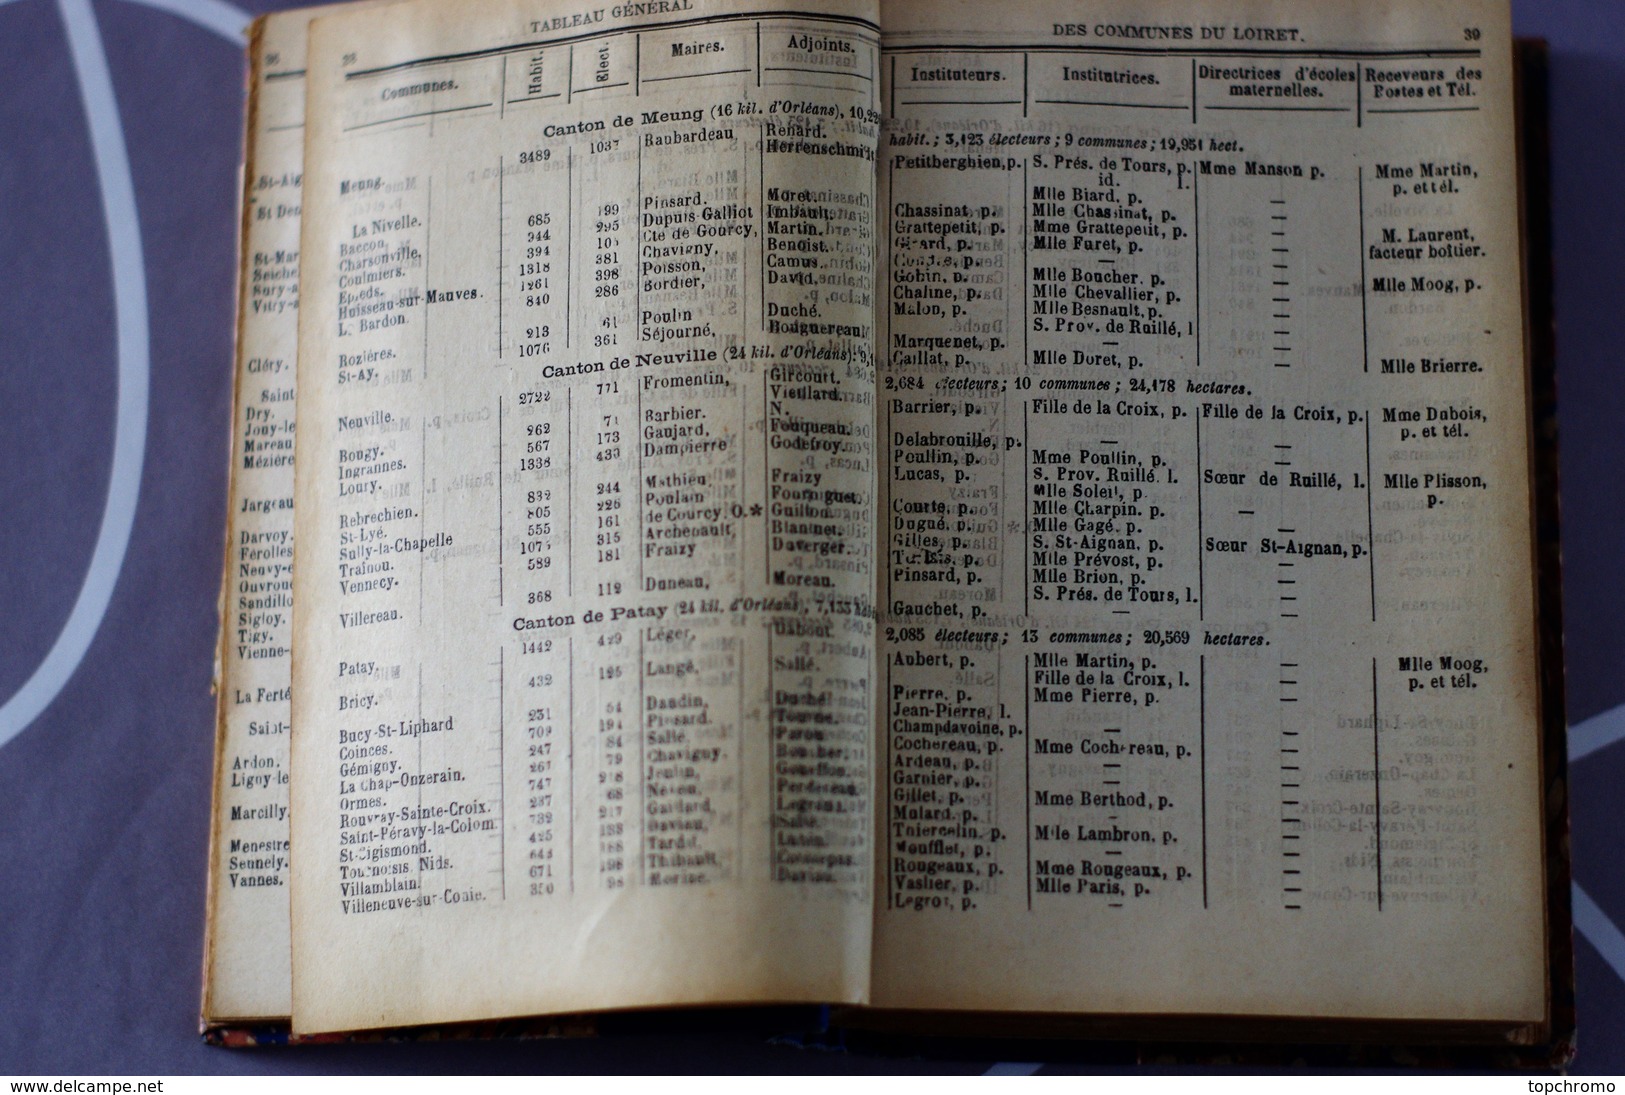 Annuaire Almanach du Loiret pour 1891 Jacob Michau avec un plan du département et un plan d'Orléans